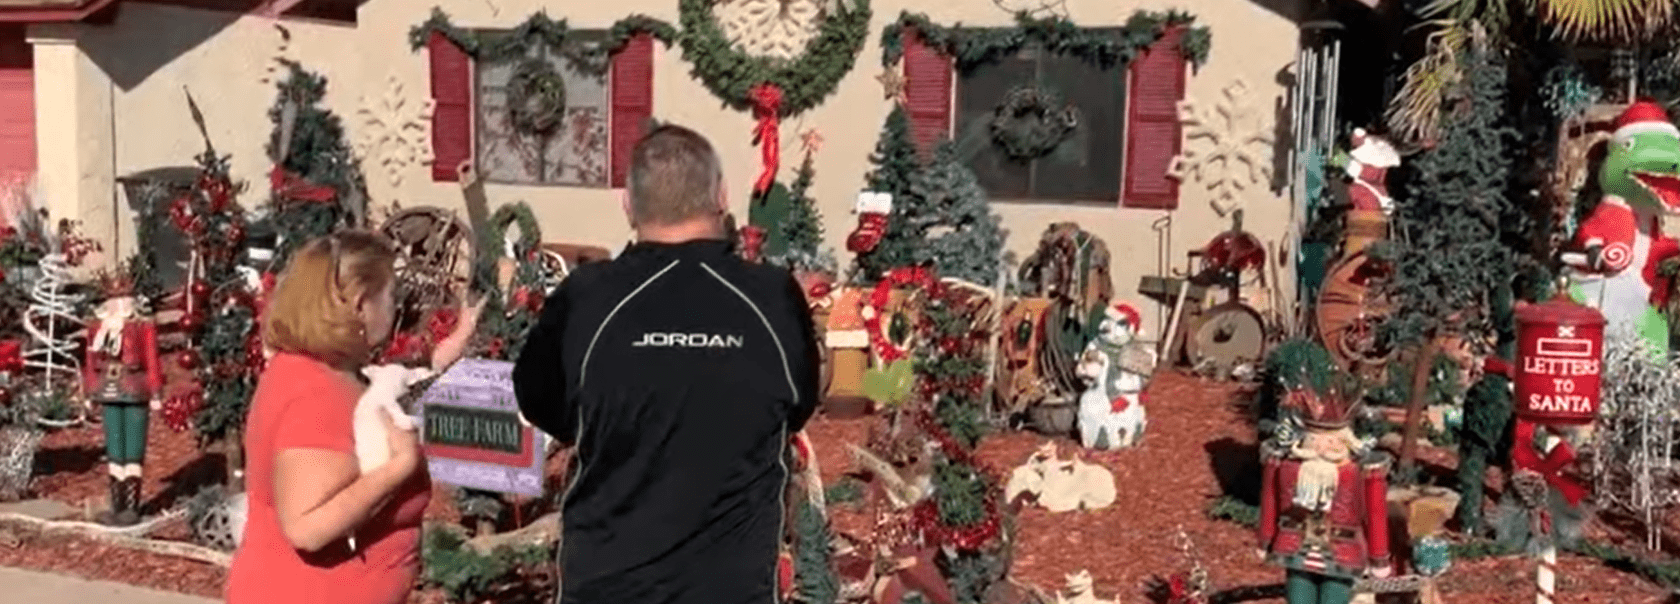 Andrew Kuzyk y su esposa Pamela Kuzyk admiran las decoraciones navideñas.┃Foto: youtube.com/ABC15 Arizona